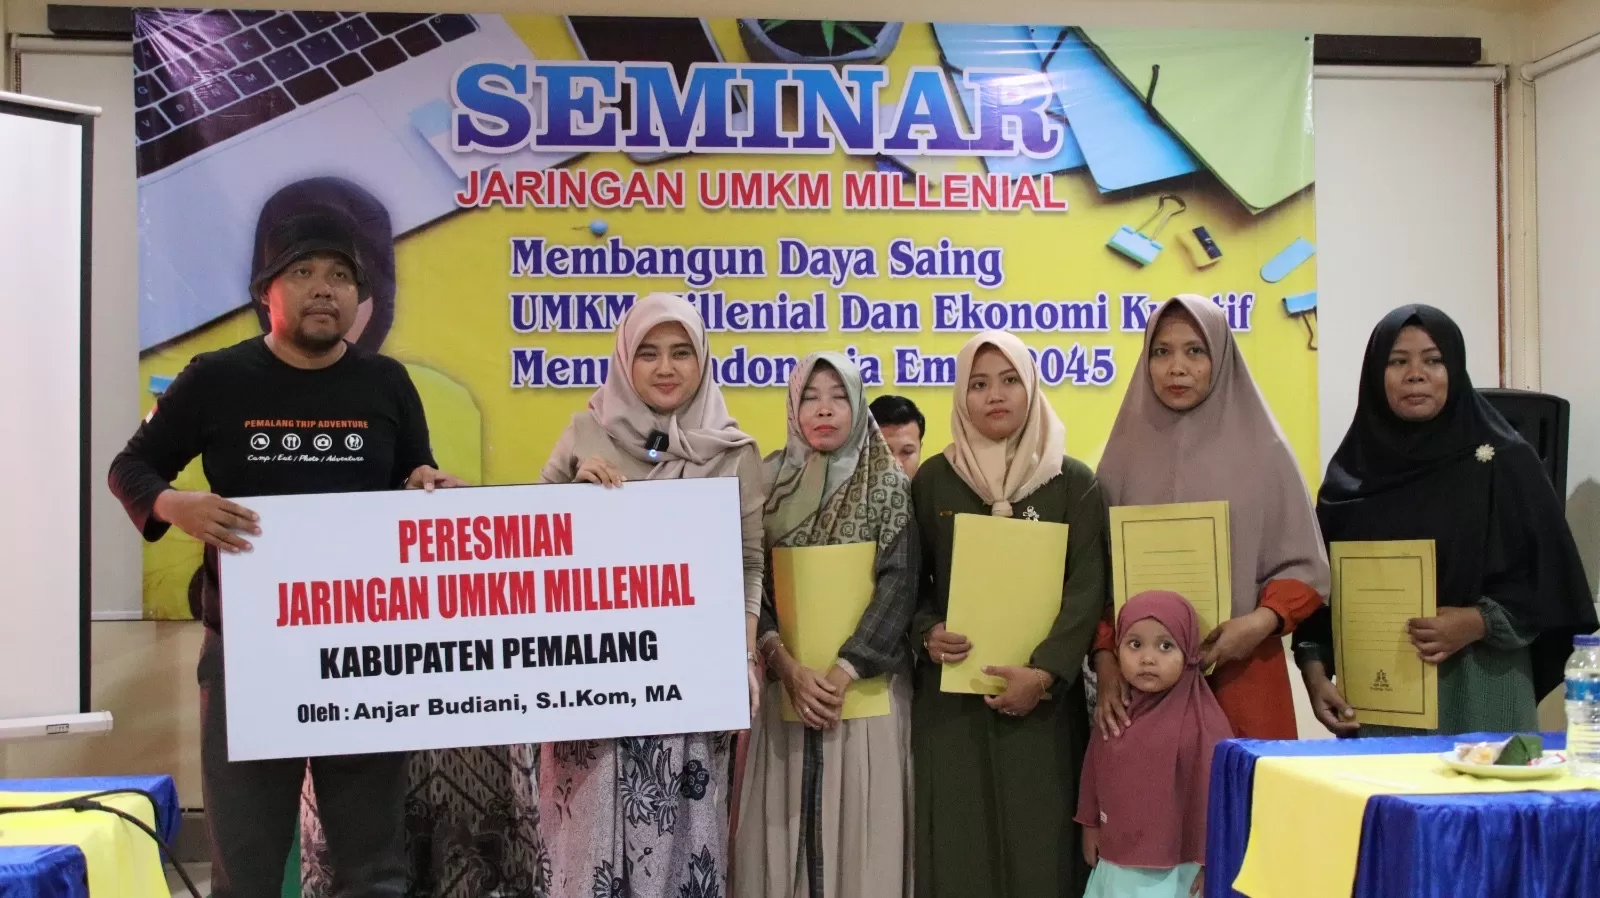 Pegiat Entreprenuer Anjar Budiani Bentuk Jaringan UMKM Milenial di Kabupaten Pemalang